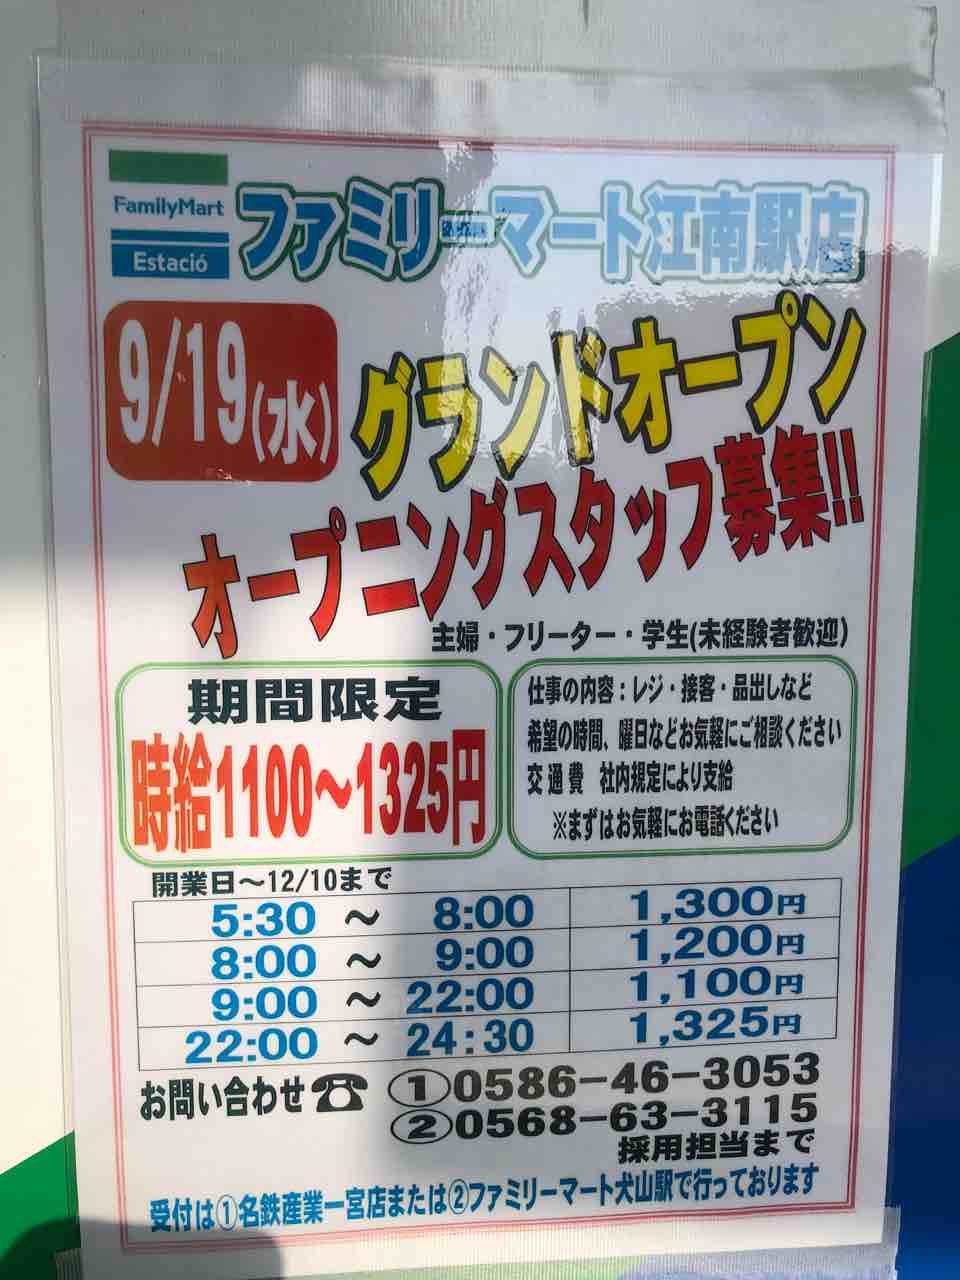 ファミリーマート江南駅店9/19（水）グランドオープン